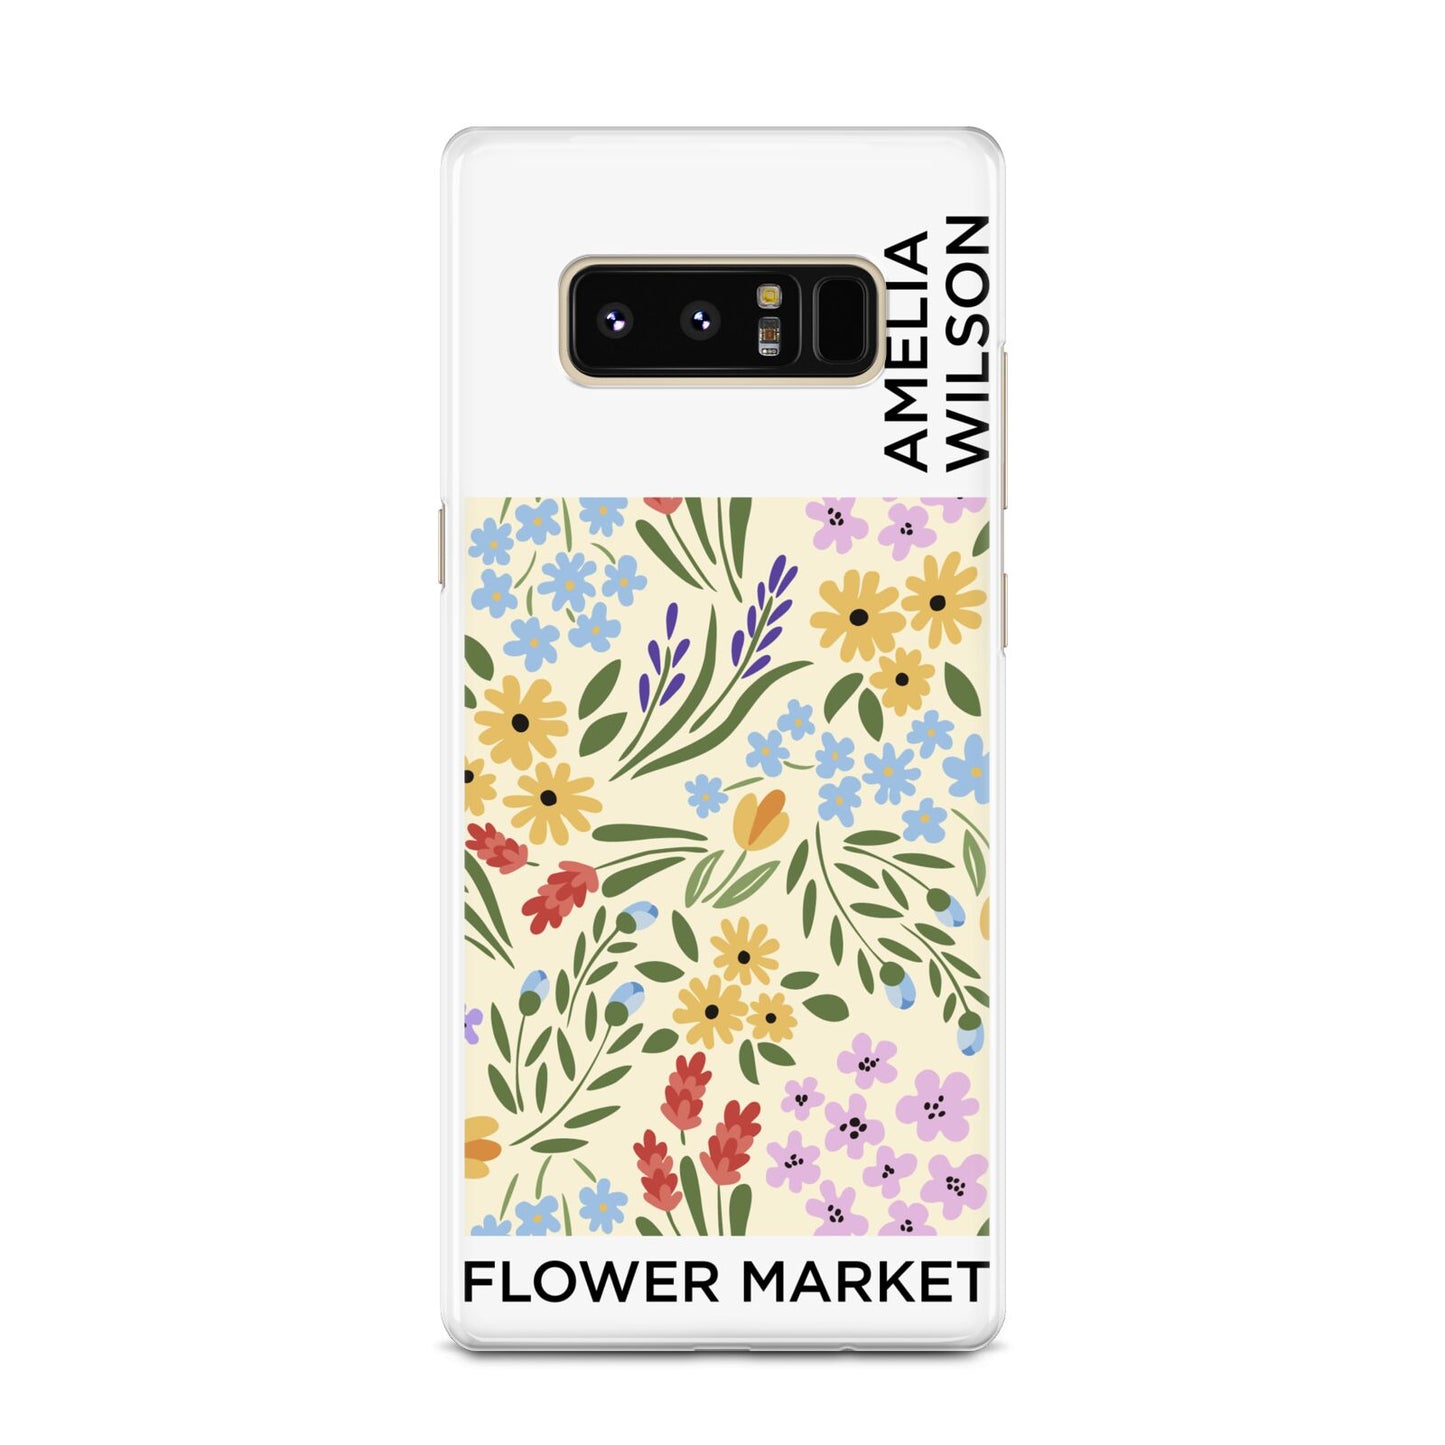 Paris Flower Market Samsung Galaxy Note 8 Case